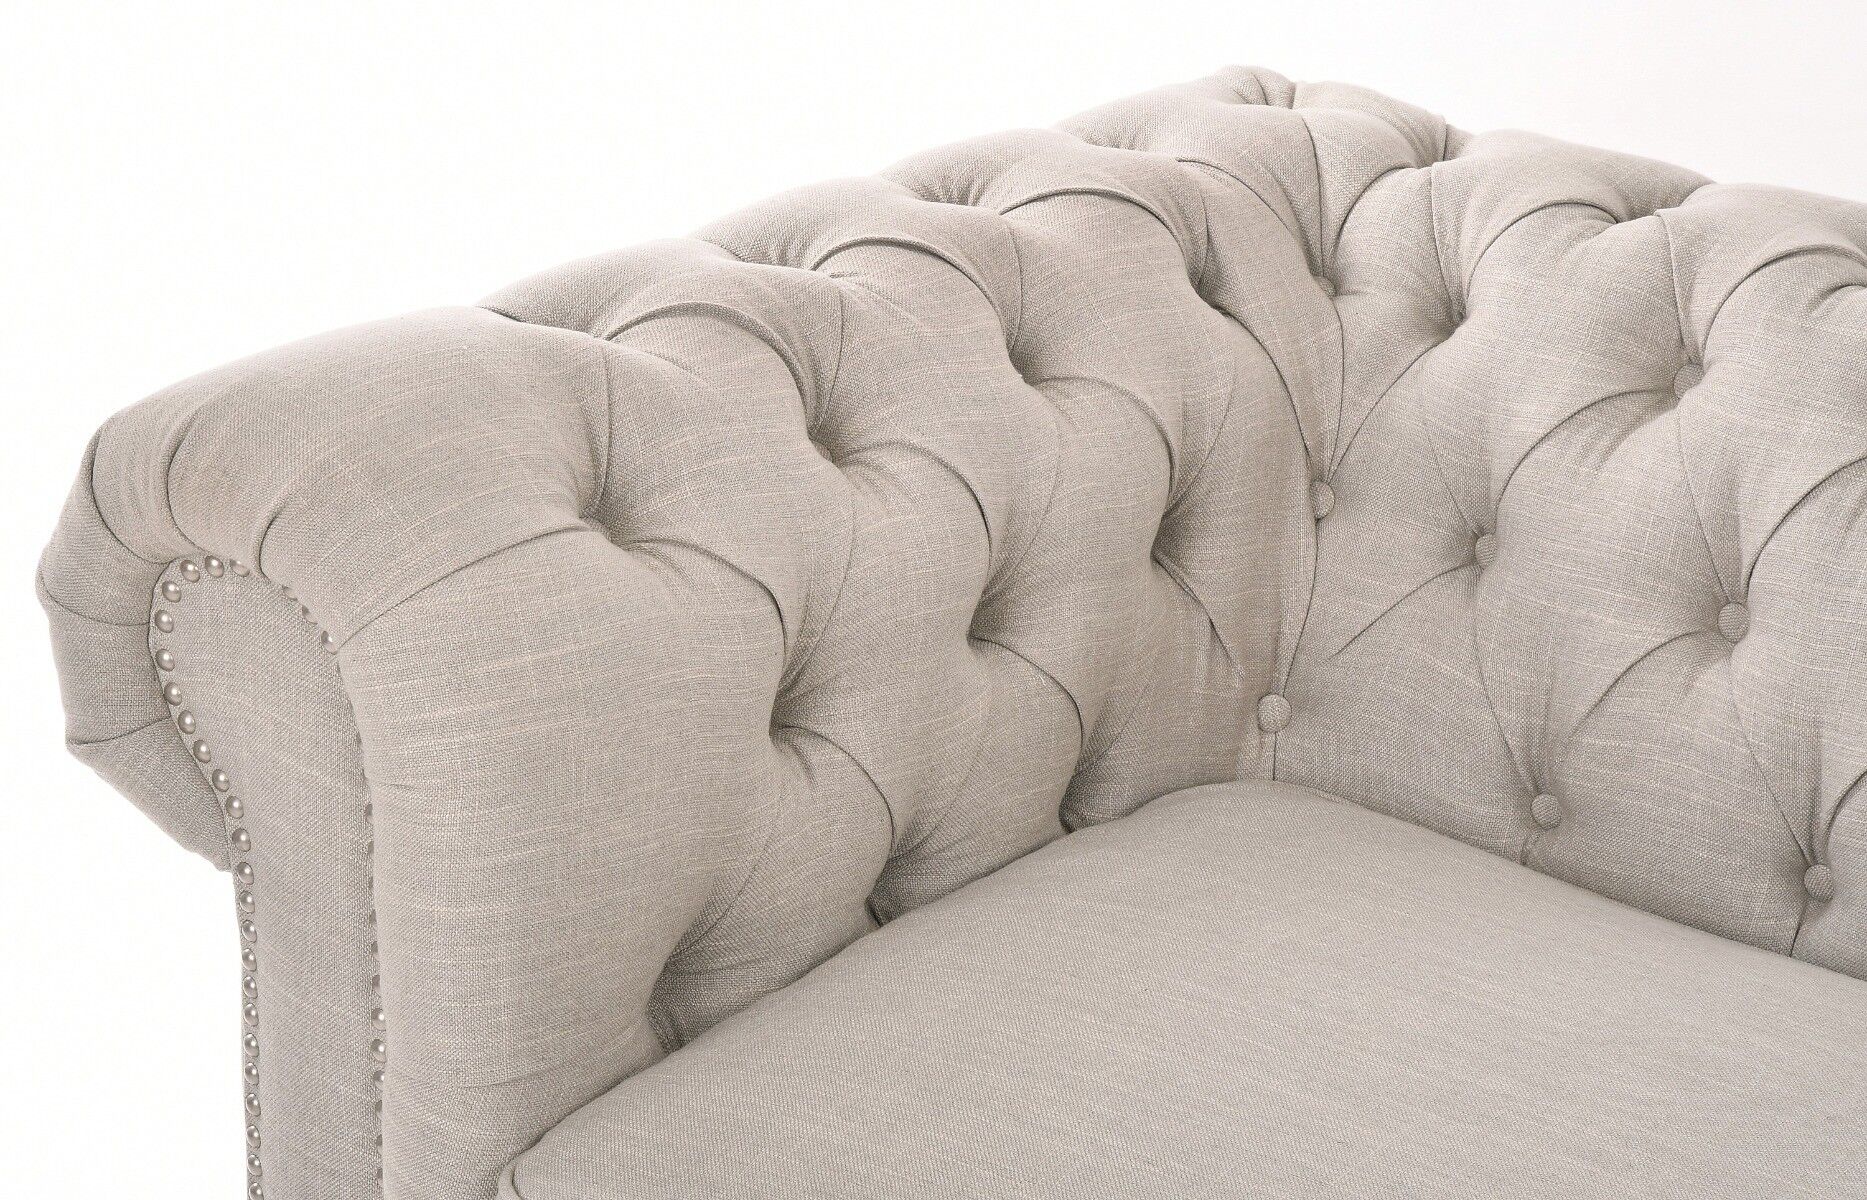 Sofa rozkładana Chester 220x96x78cm